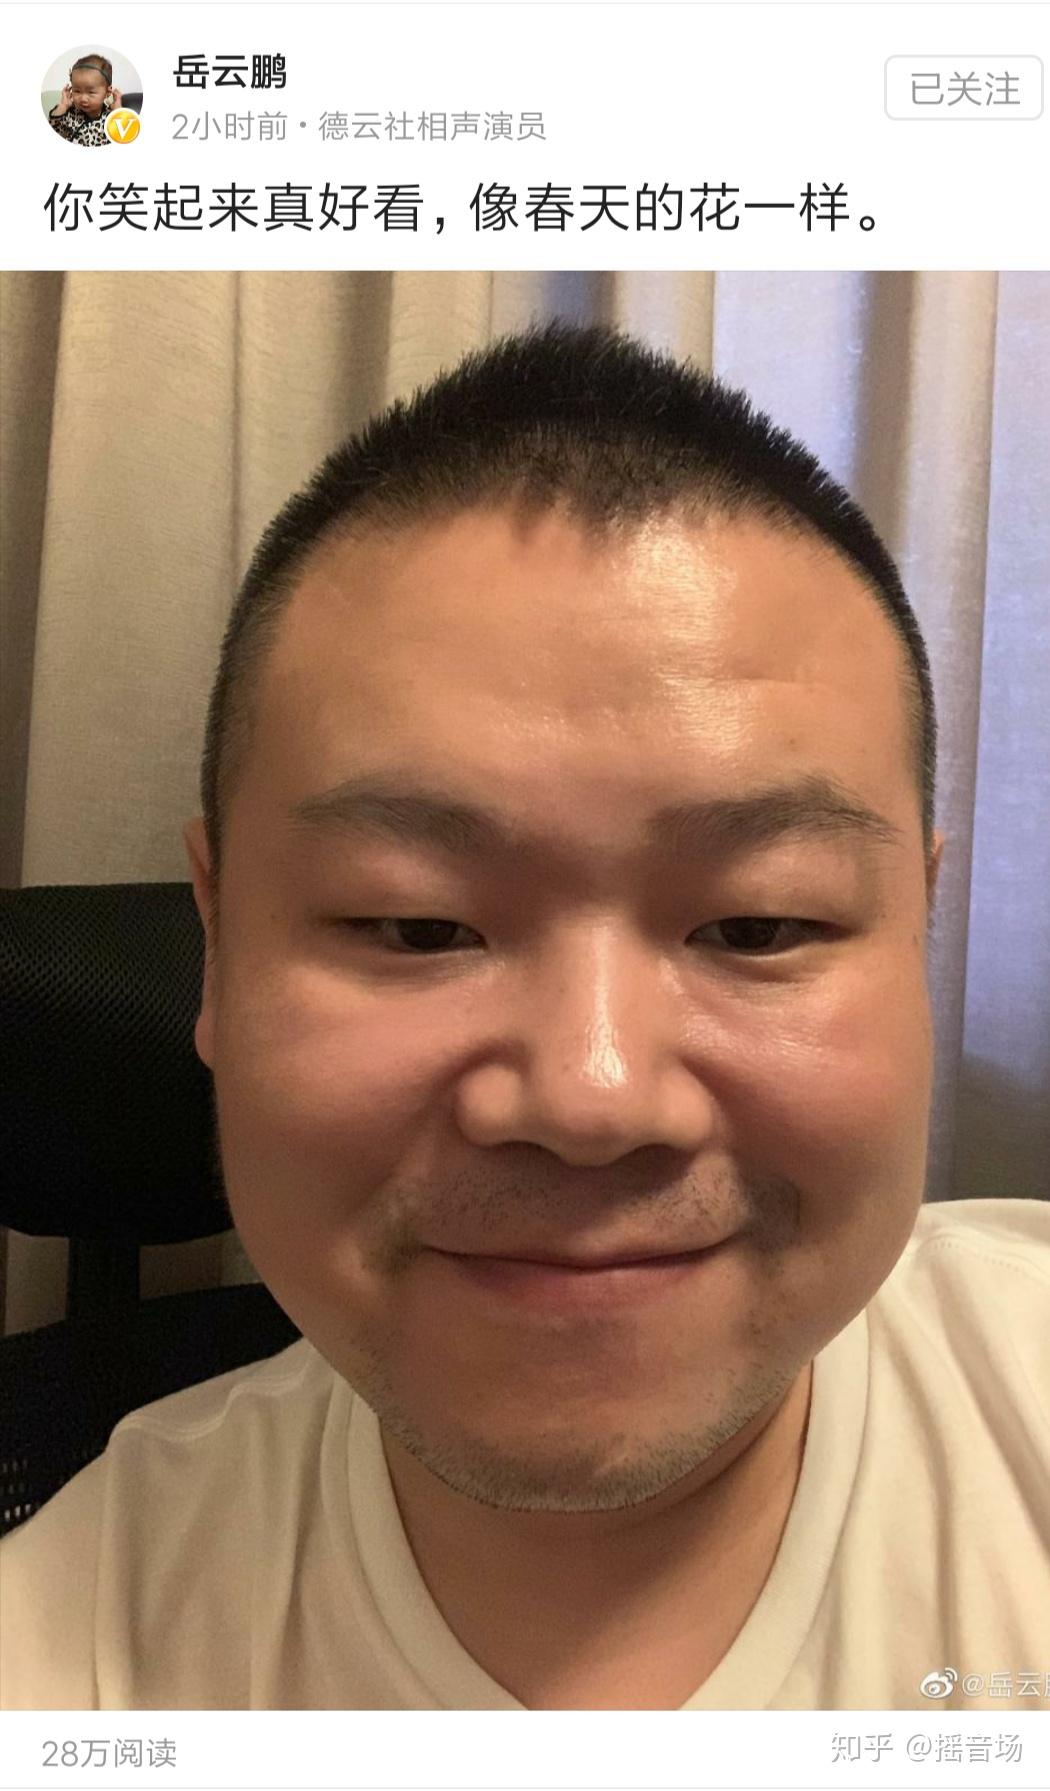 昨天,岳云鹏发了一条微博,上传了一张自己笑脸的照片,并配文:你笑起来